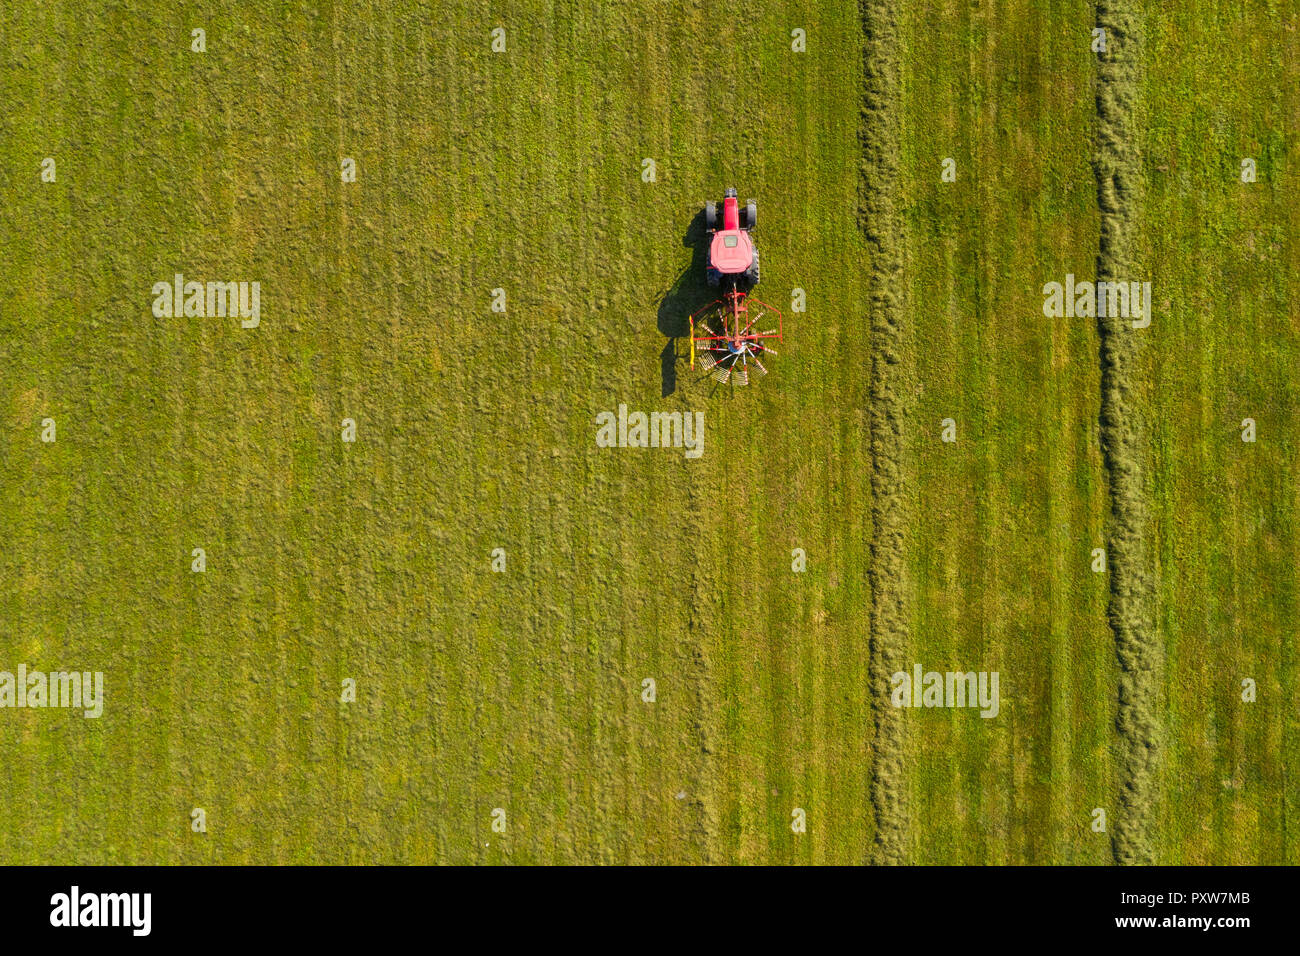 Tracteur rouge de l'andainage hay, de haut en bas vue aérienne, de l'agriculture et de l'agriculture Banque D'Images